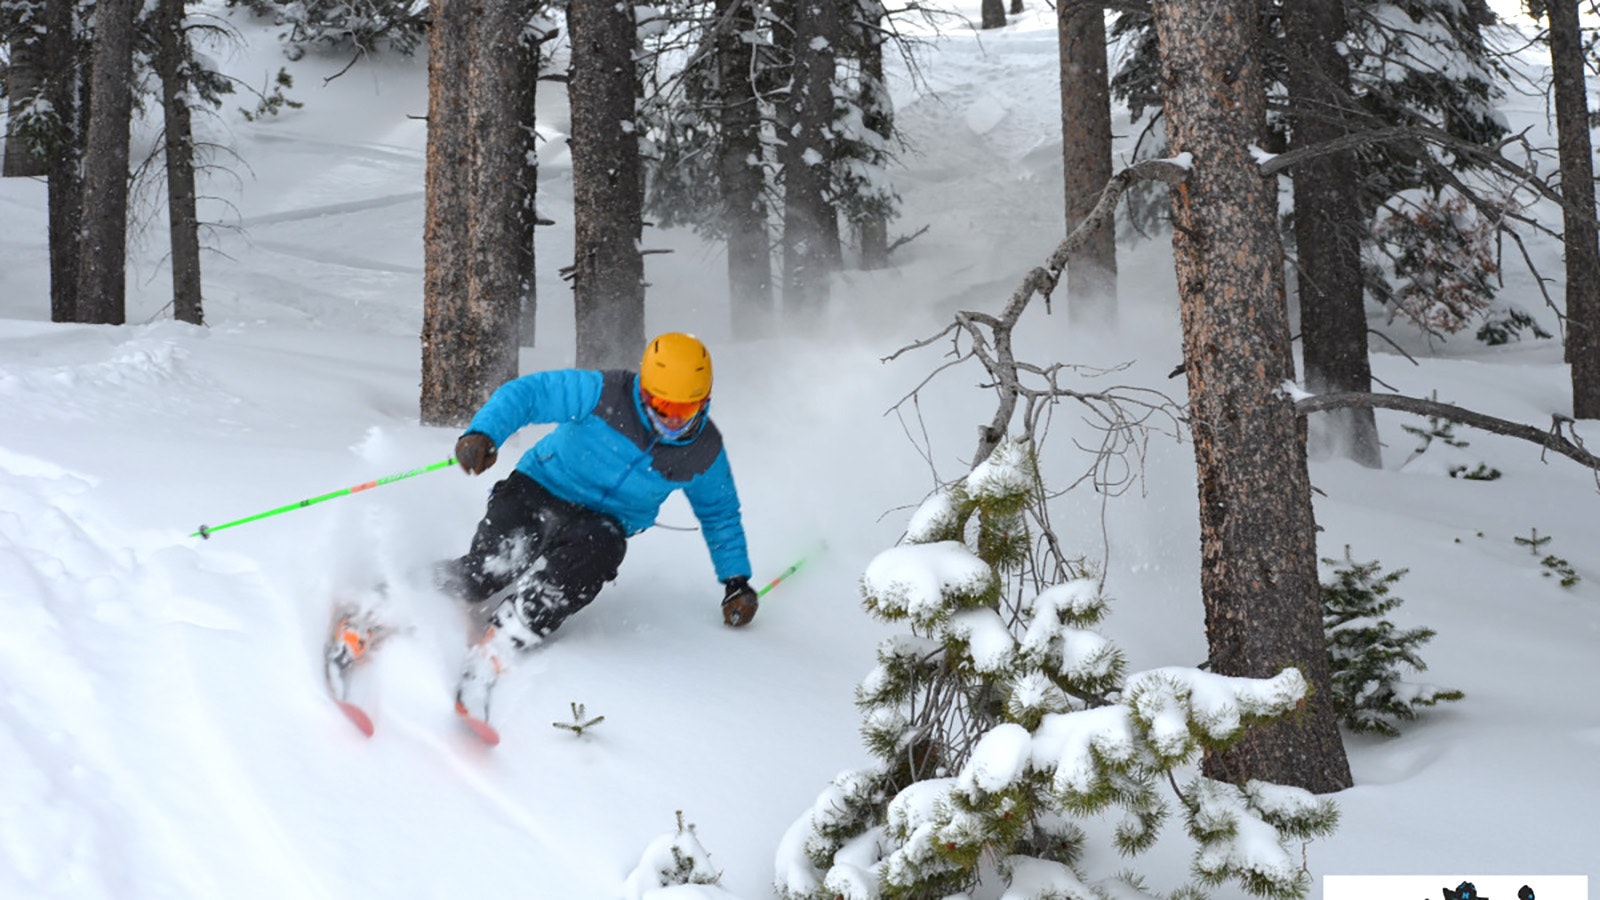 A skier catches some good powder skiing at Hogadon Ski Area.